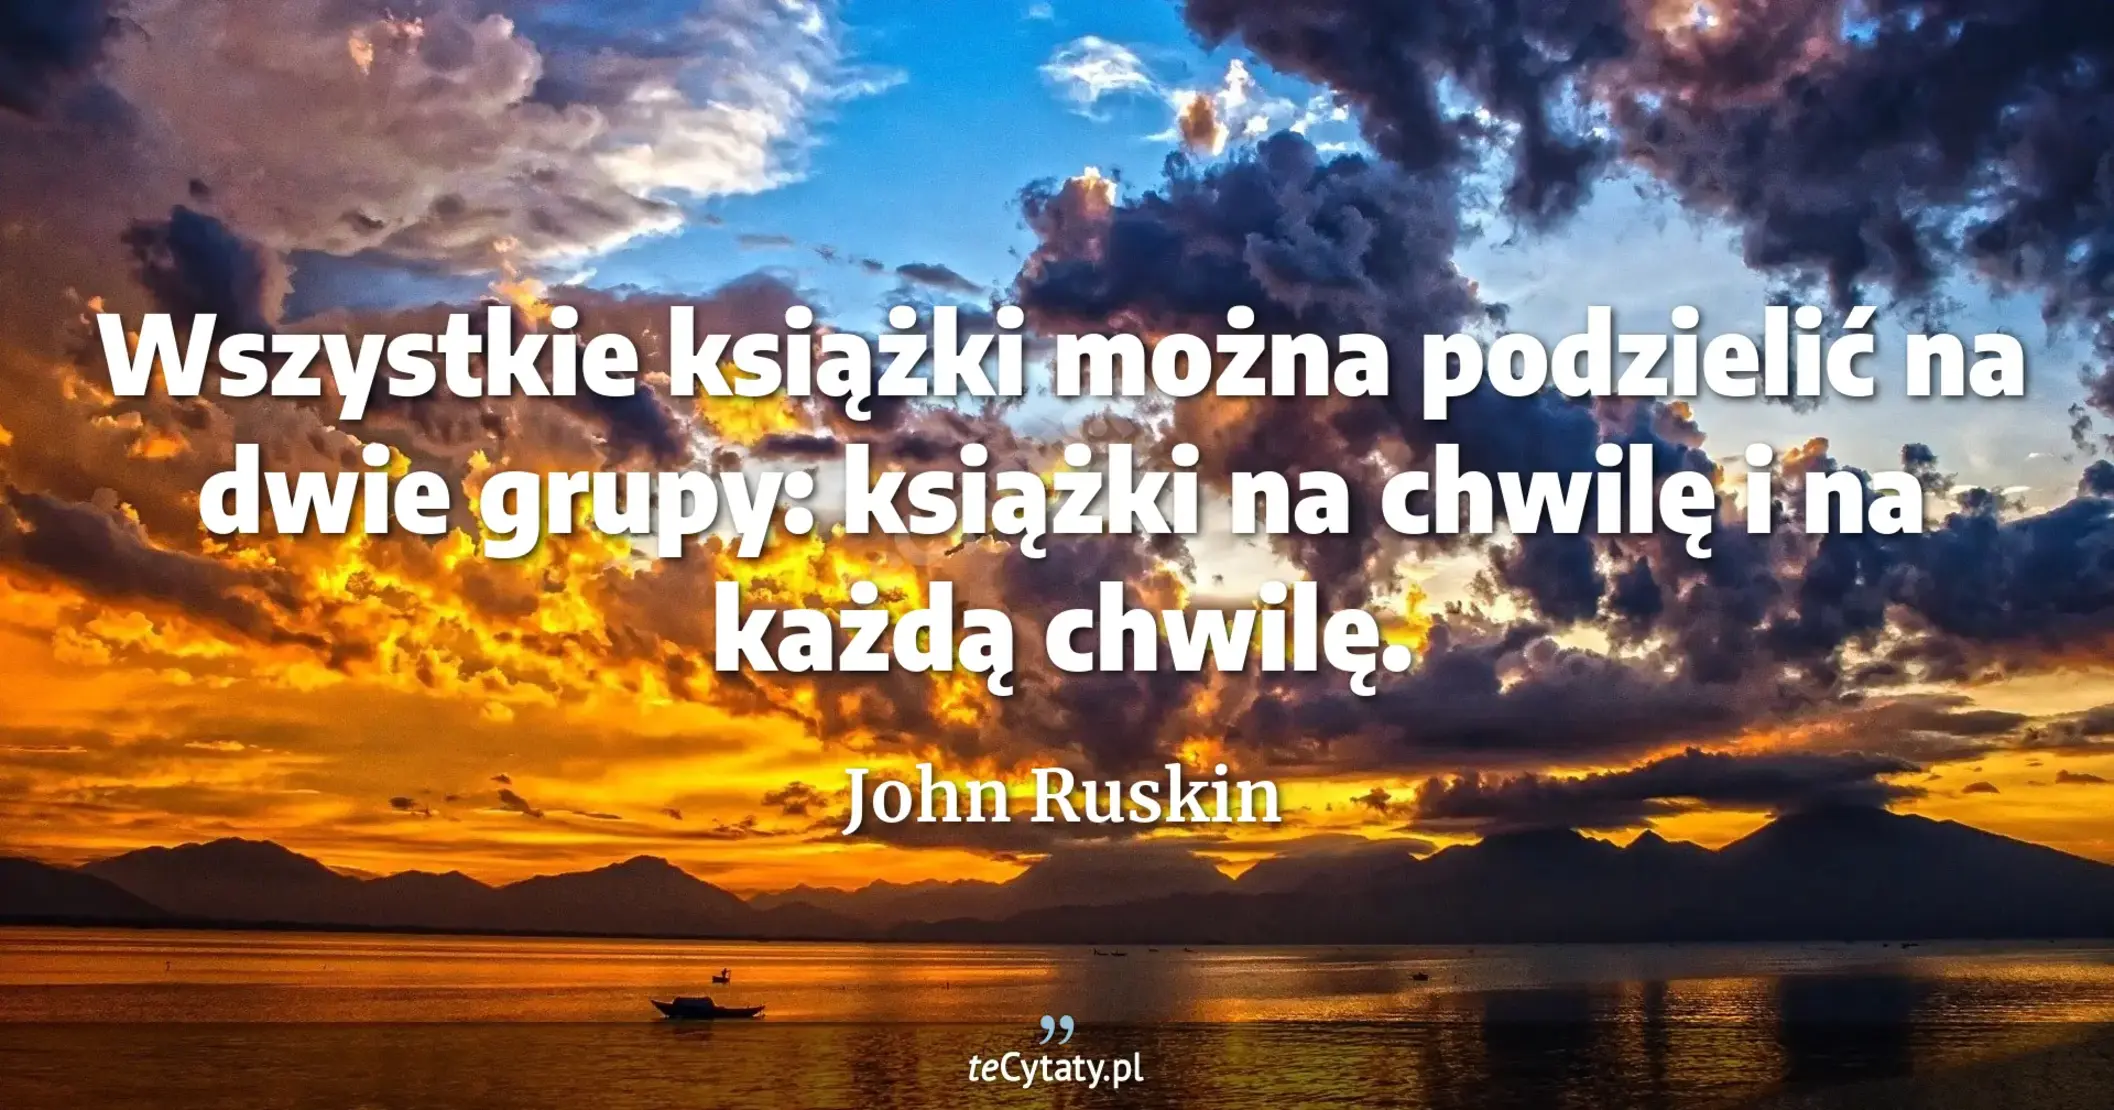 Wszystkie książki można podzielić na dwie grupy: książki na chwilę i na każdą chwilę. - John Ruskin